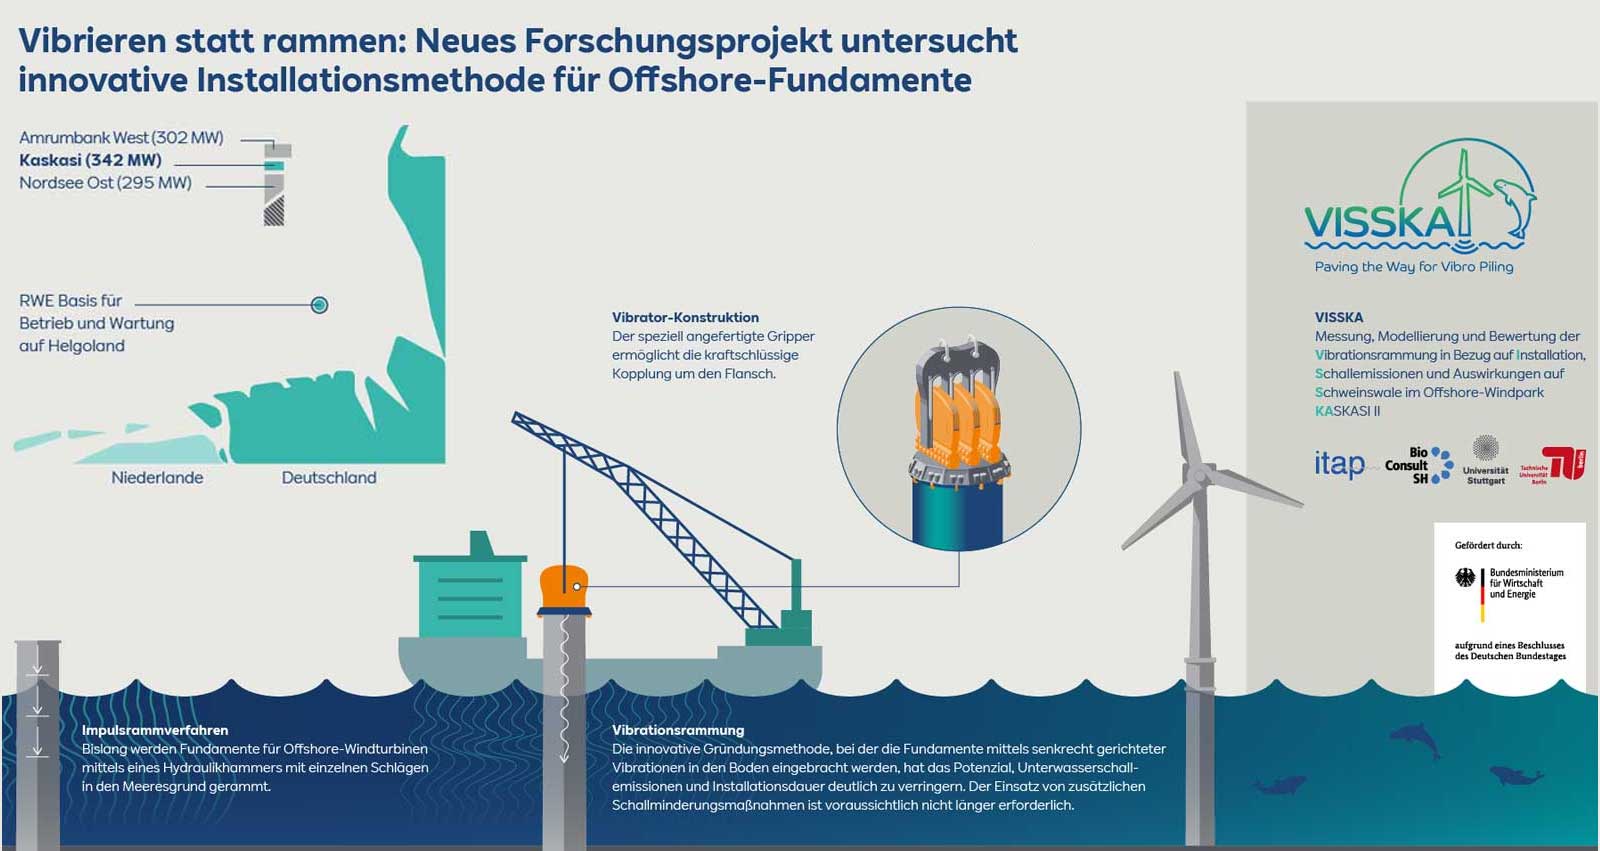 Vibrieren statt rammen - Innovative Installationsmethode für Offshore-Fundamente | RWE Kaskasi